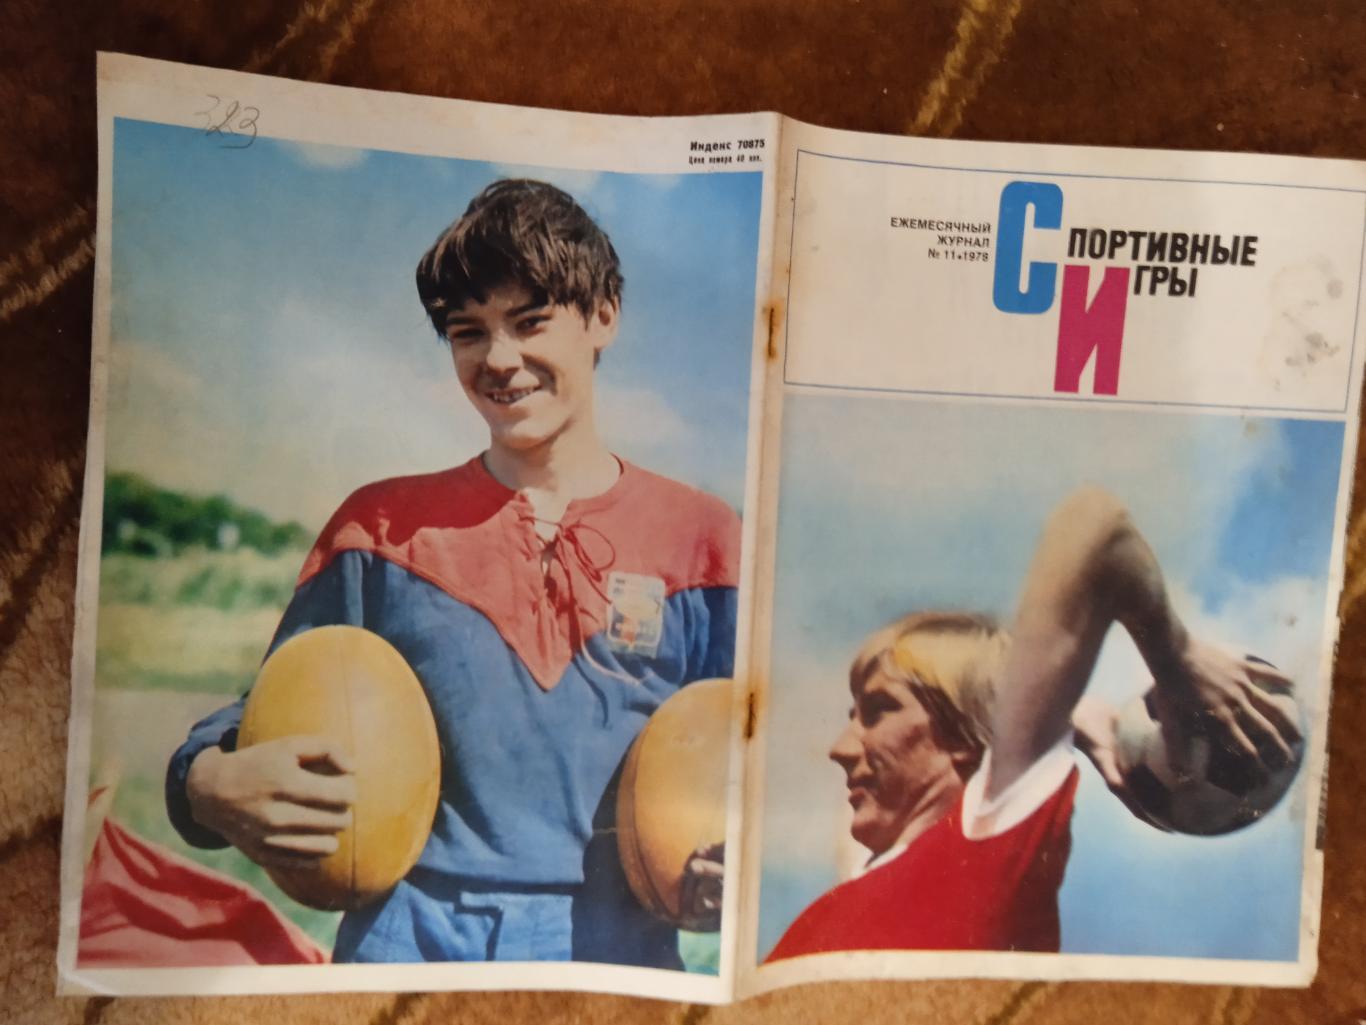 Журнал.Спортивные игры № 11 1978 г.Футбол,хоккей,волейбол,регби.ЧМ 78 Аргентина.